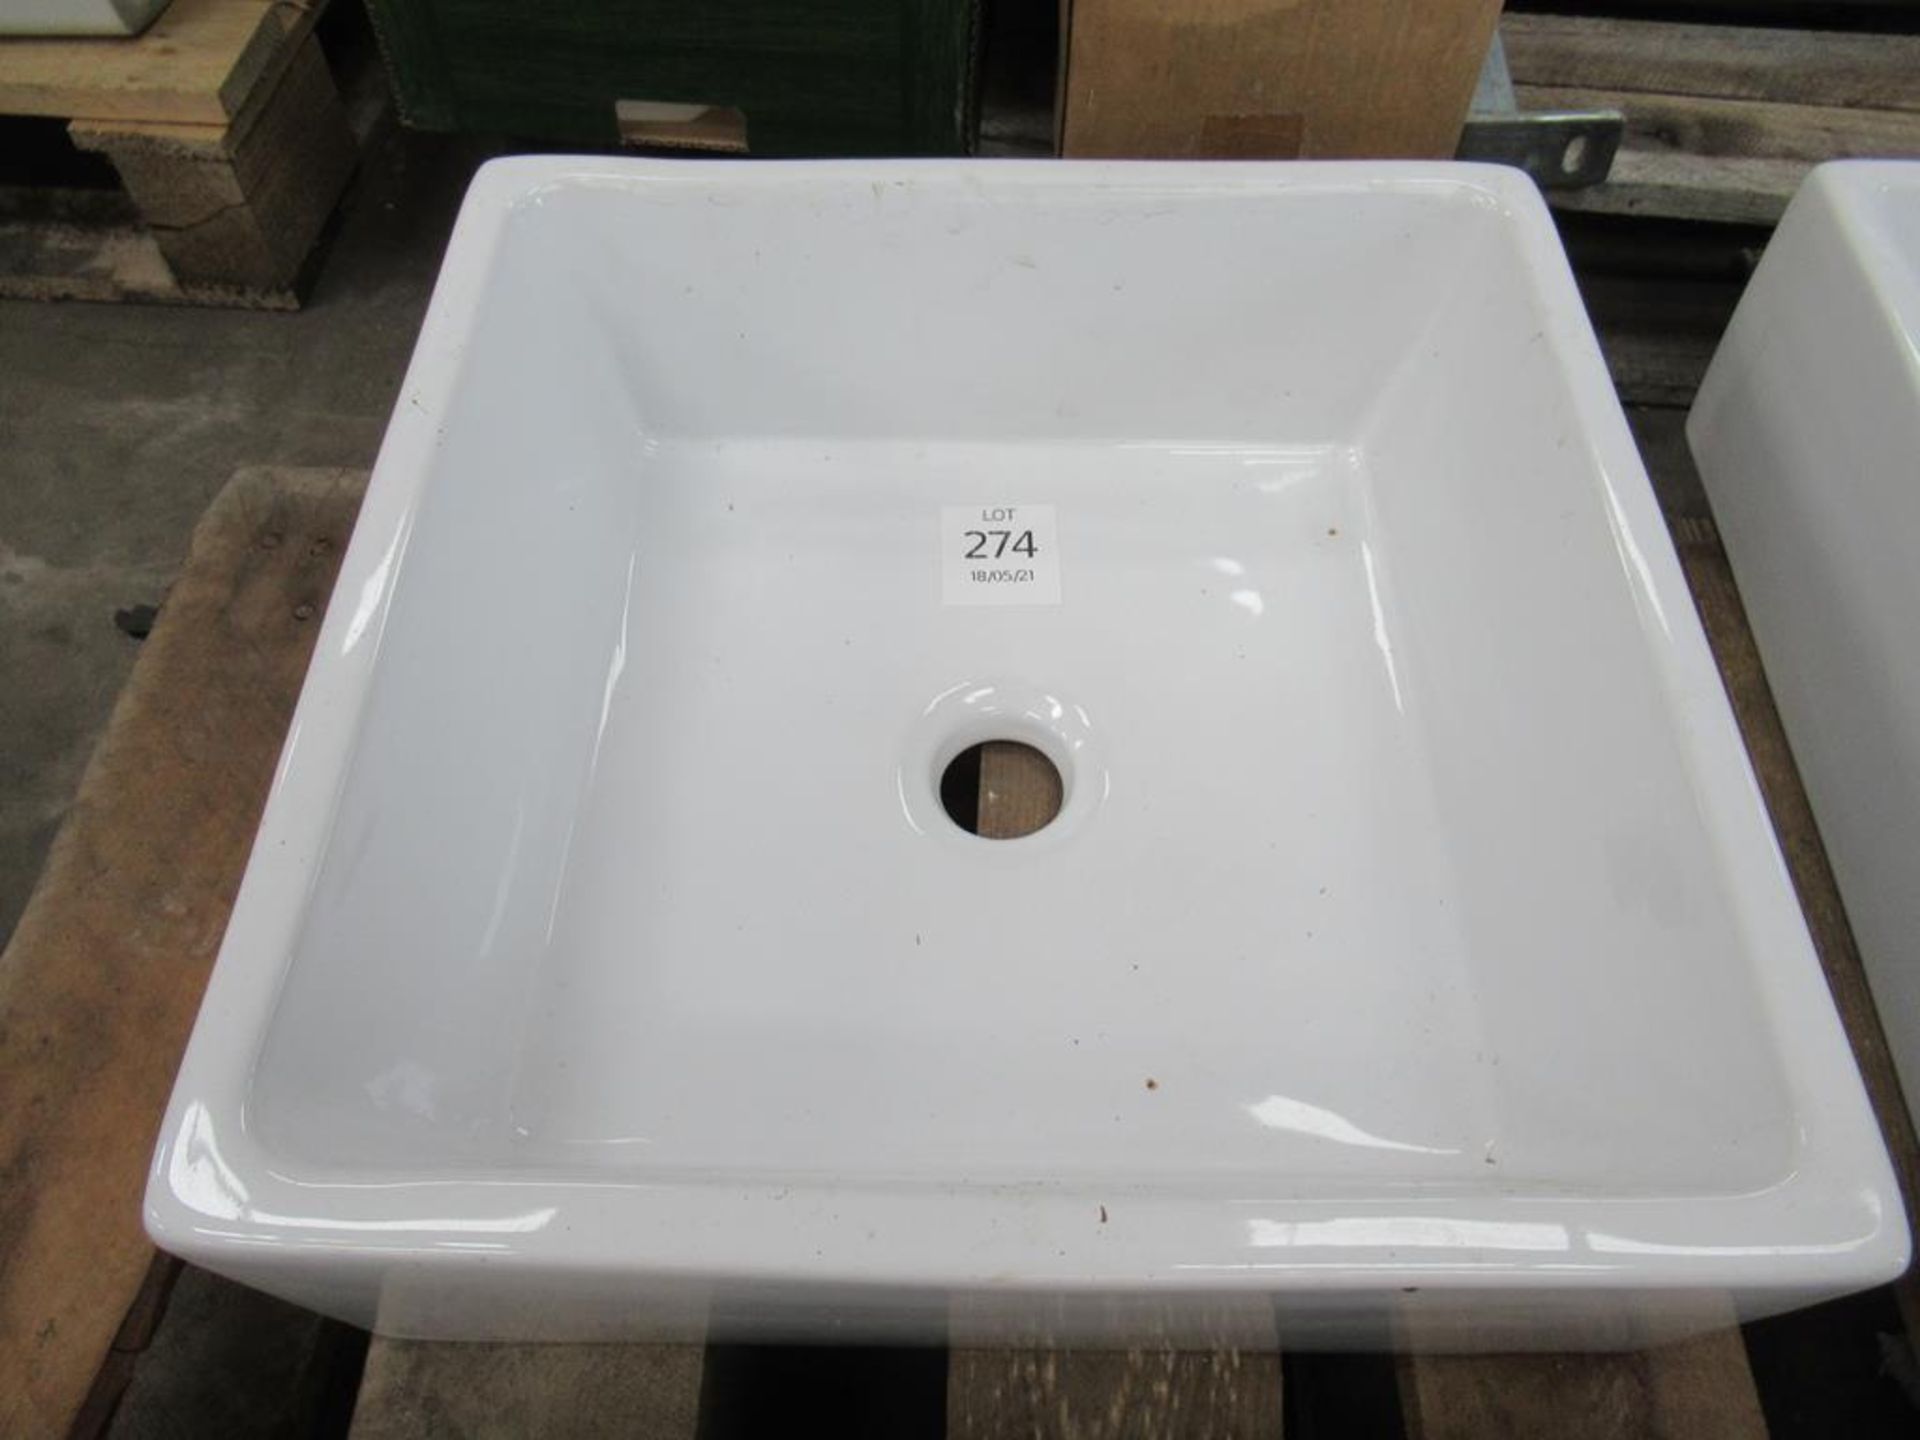 A square Porcelain Sink/Bowl